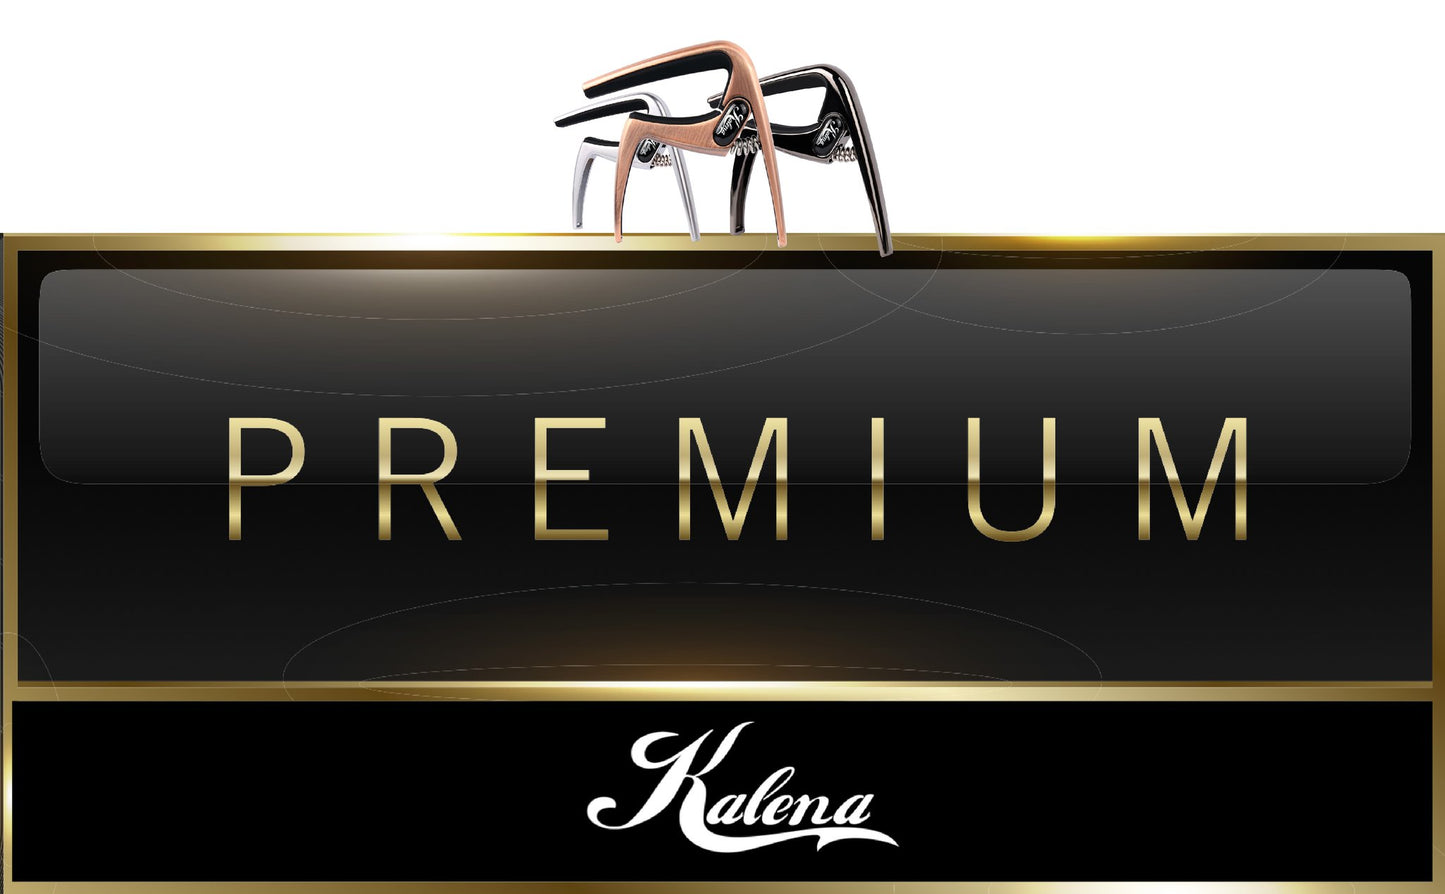 Kalena Premium Capo Deluxe Alloy - Kalena Instruments